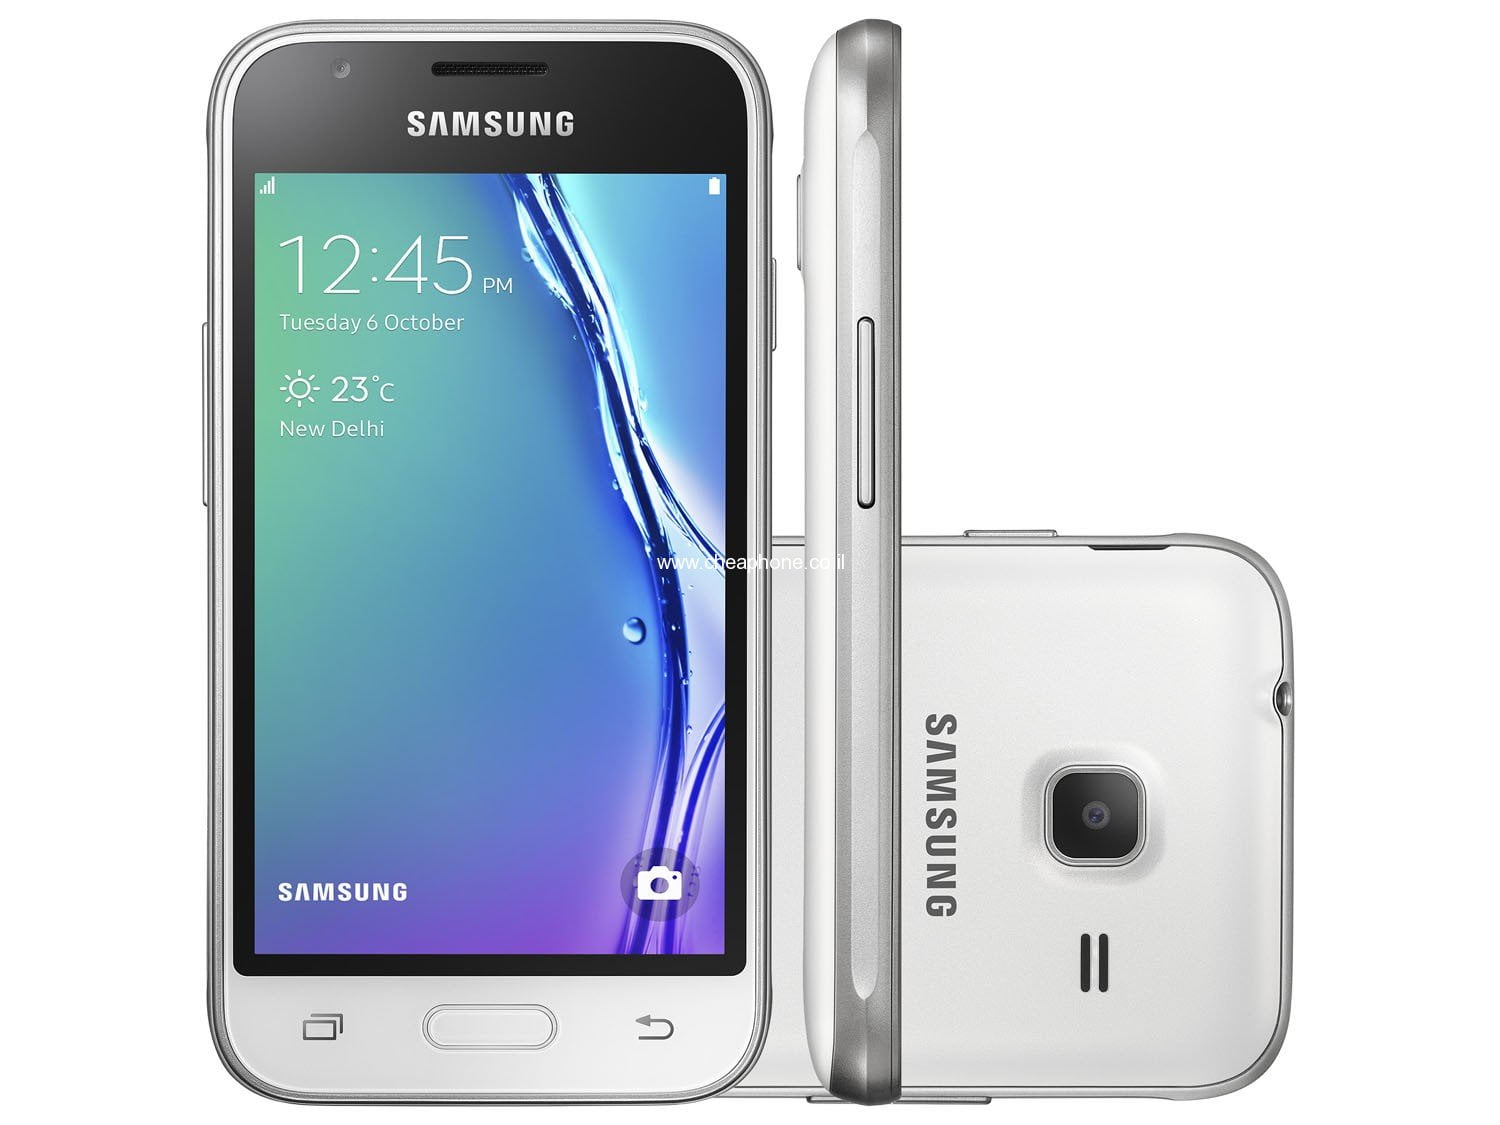 Samsung galaxy mini j105h. Samsung Galaxy j1 Mini. Samsung Galaxy j1 Mini SM-j105h. Samsung j1 Mini Prime. Samsung Galaxy j1 Mini Prime.